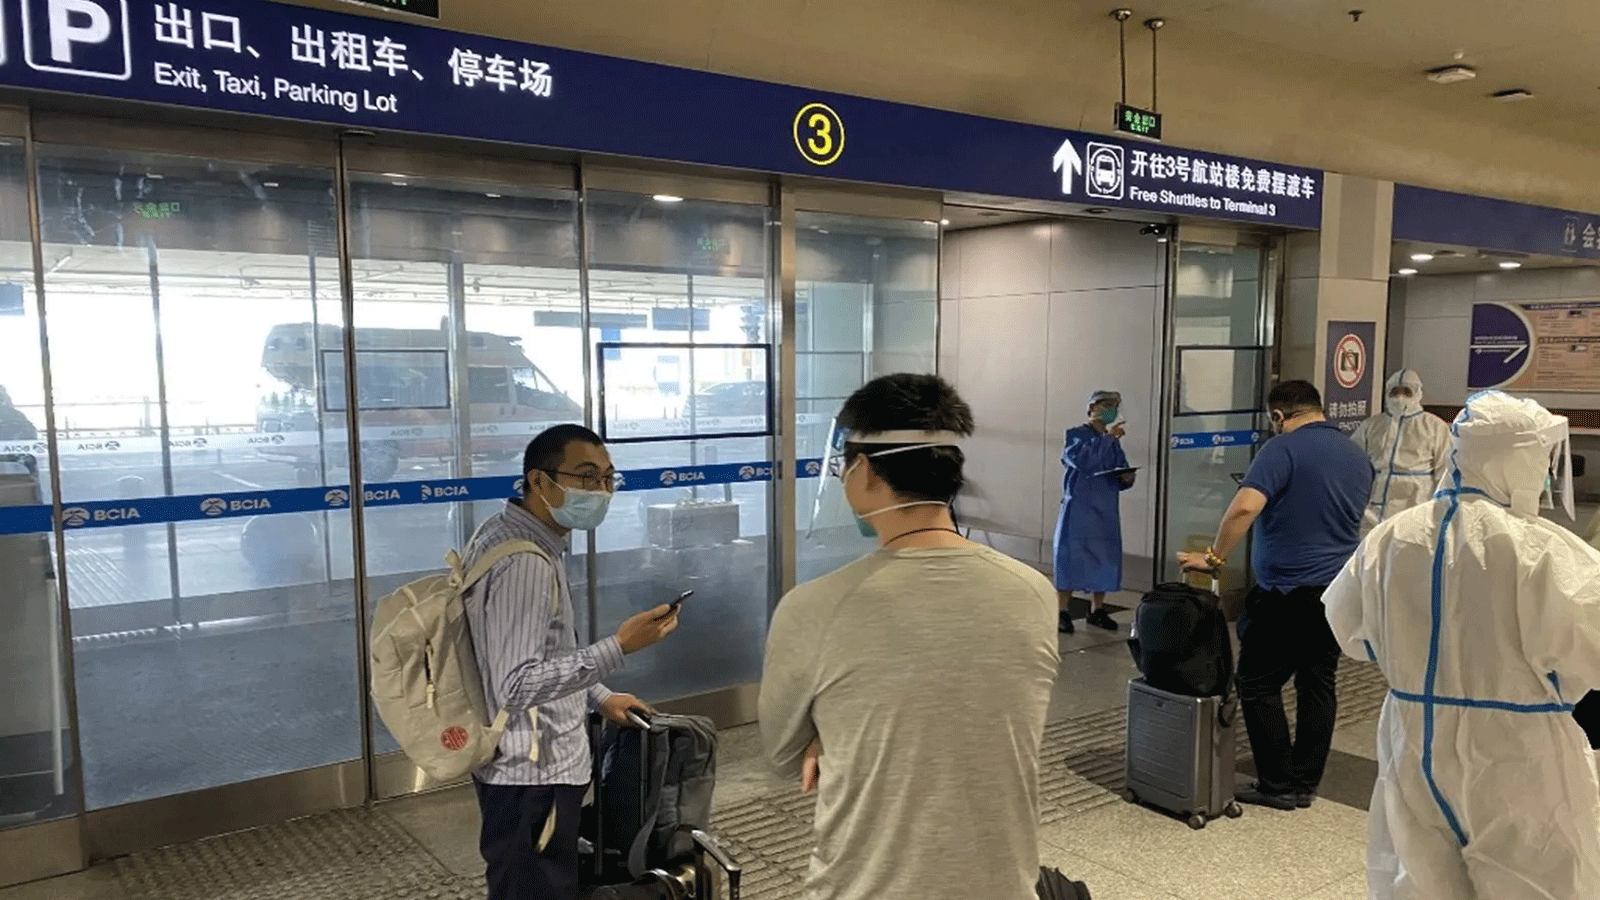 صورة تم التقاطها في 18 حزيران\ يونيو 2022 تُظهِر الركاب القادمين في انتظار نقلهم إلى وجهات مخصصة للحجر الصحي من مطار بكين الدولي في بكين.